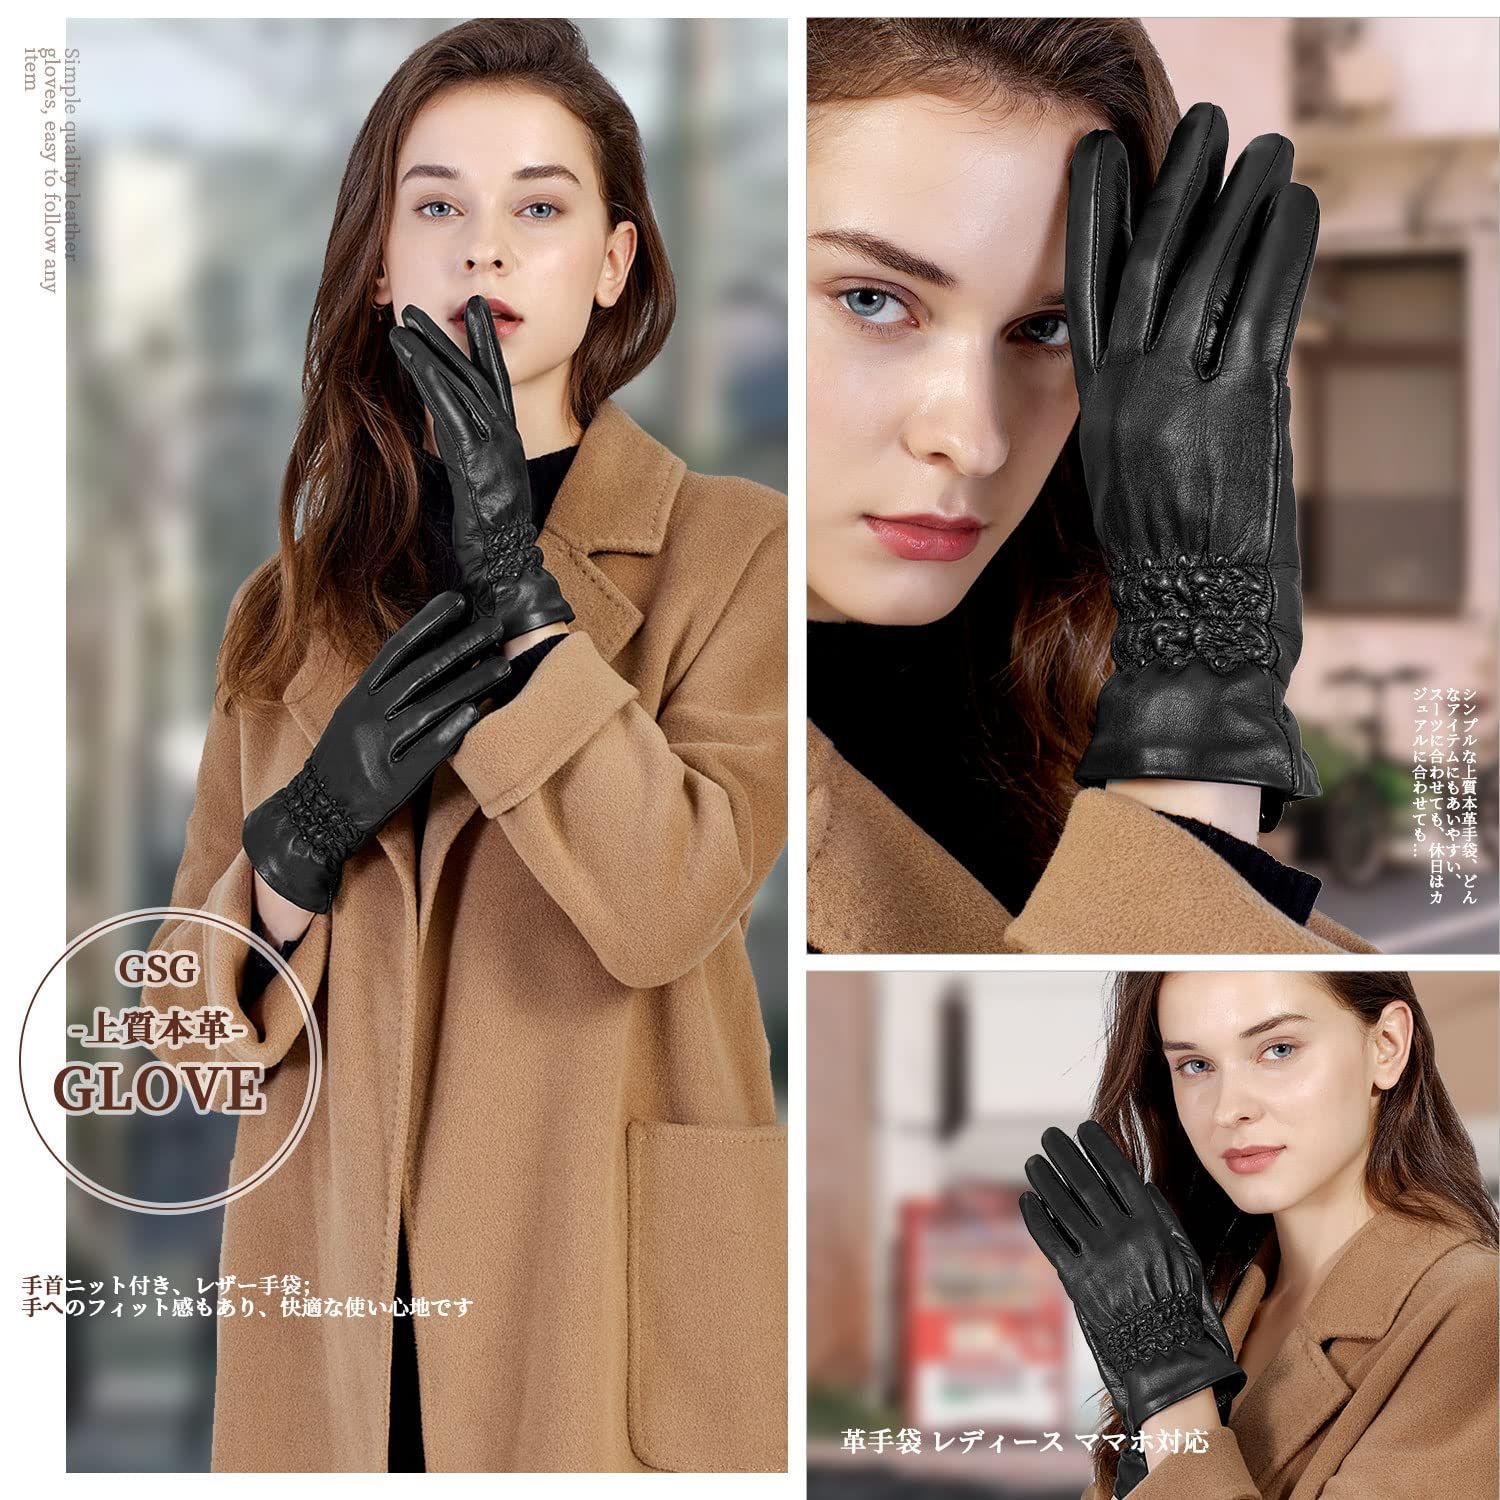 激安セール GSG 手袋 メンズ ad-naturam.fr